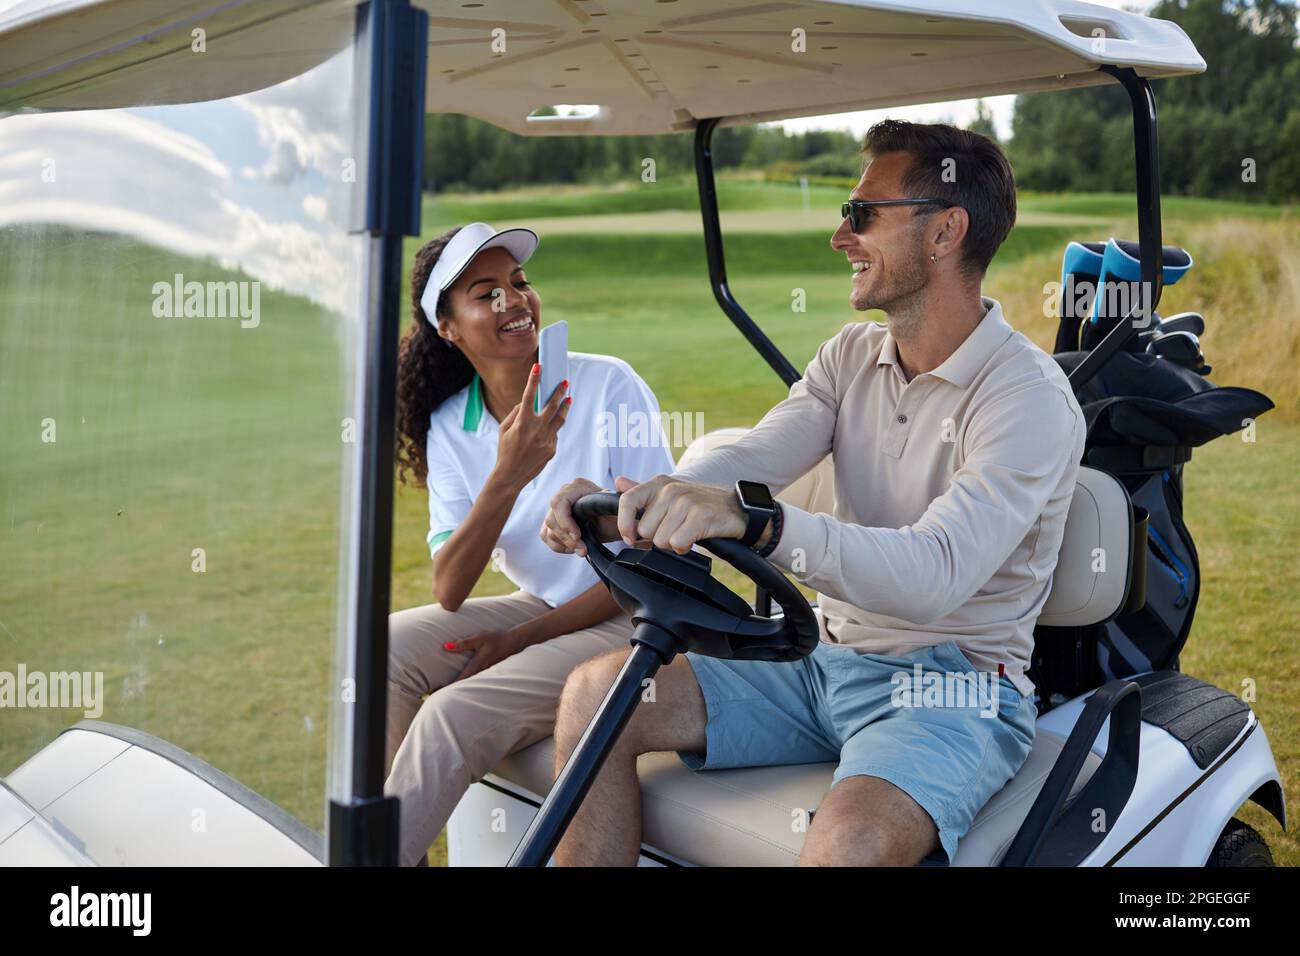 Porträt eines multiethnischen sportlichen Paares, das Fotos im Golfwagen im Freien macht und fröhlich lächelt Stockfoto